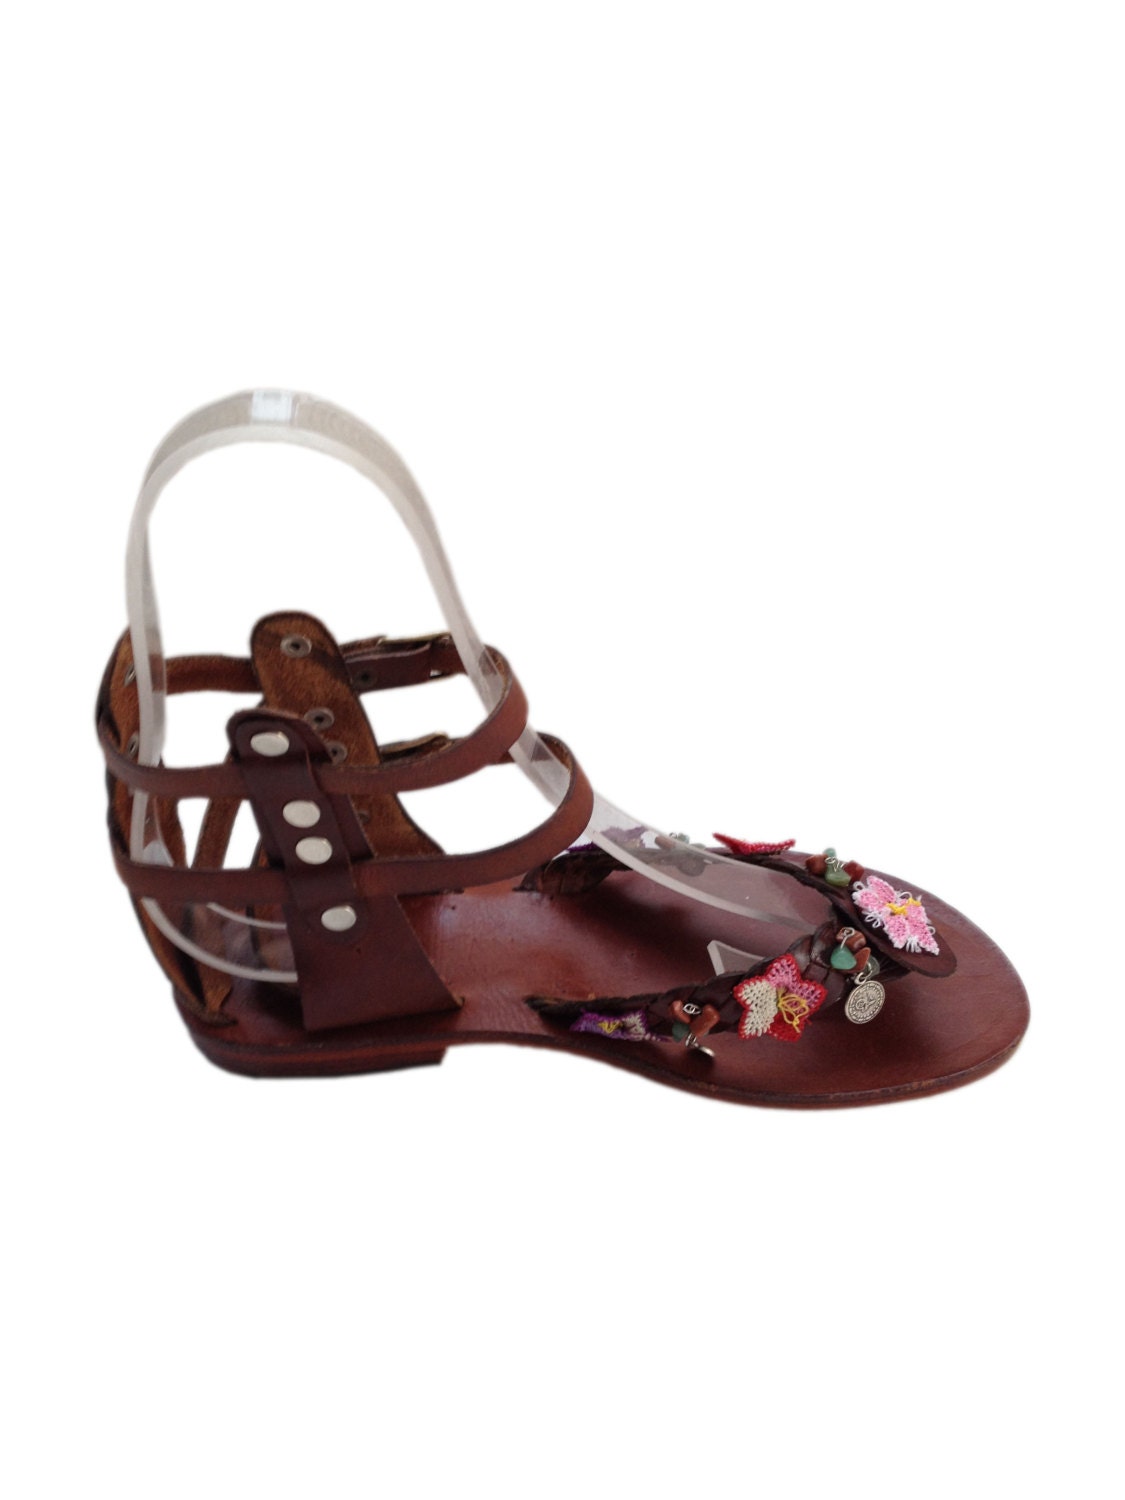 Leather Sandals Women Boho Gladiator Flat Anklet Lace | Etsy